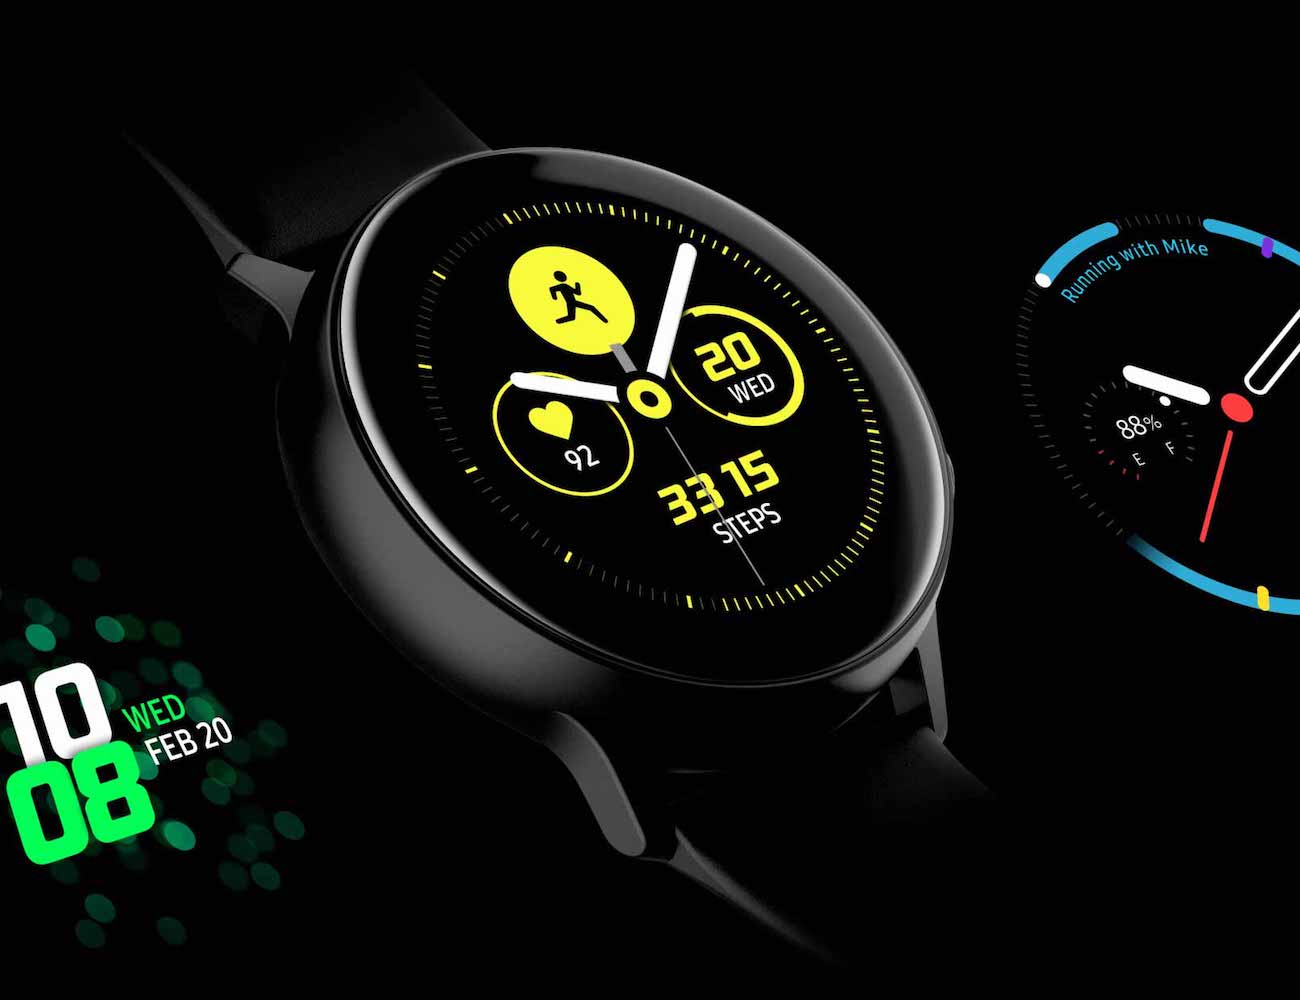 Montres intelligentes Samsung Galaxy Watch Active - avantages et inconvénients